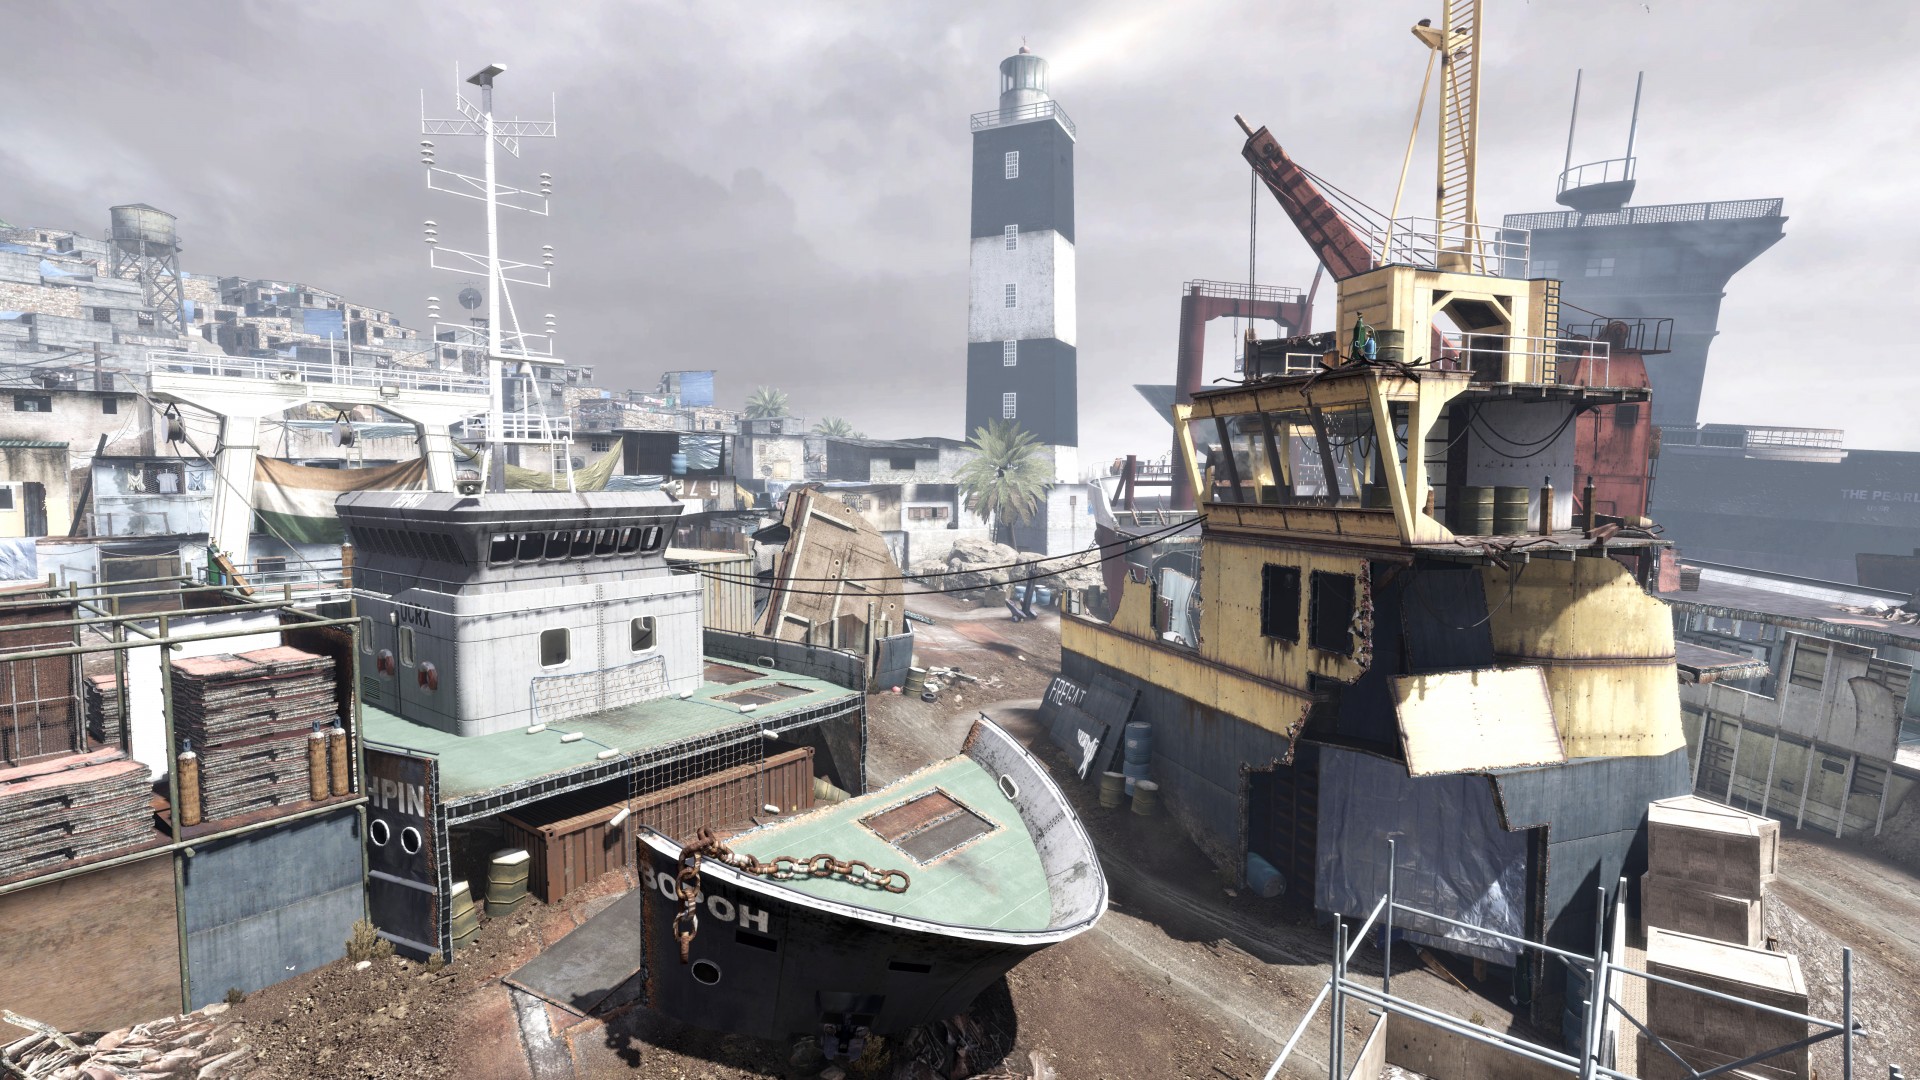 Call of Duty: Modern Warfare 3 - Collection 4: Final Assault - screenshot 5